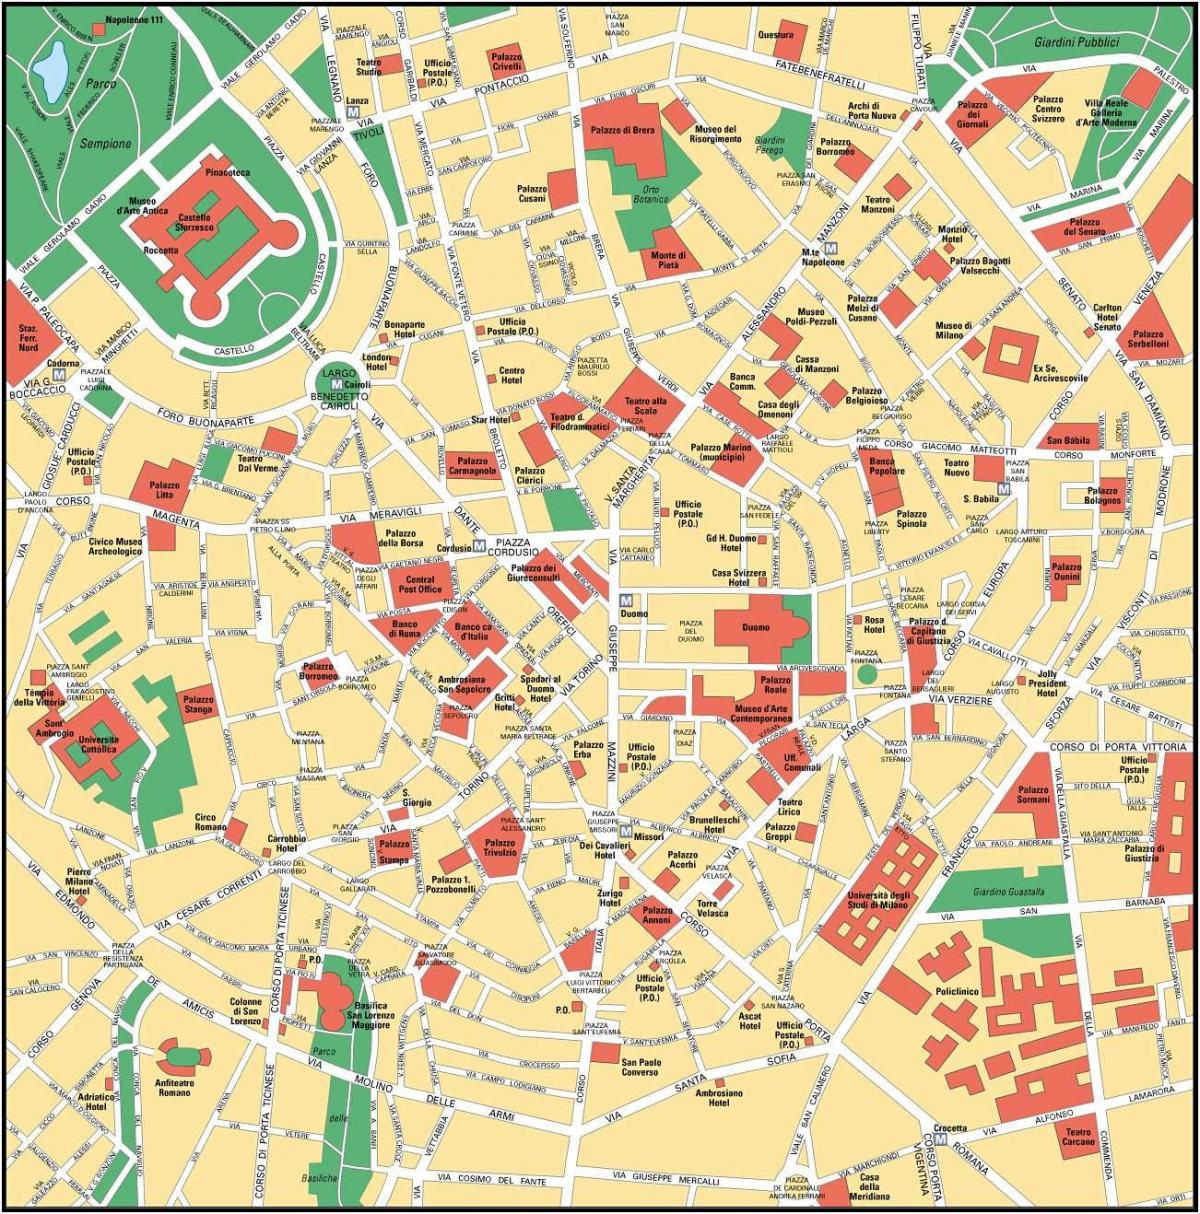 milán, italia centro da cidade mapa